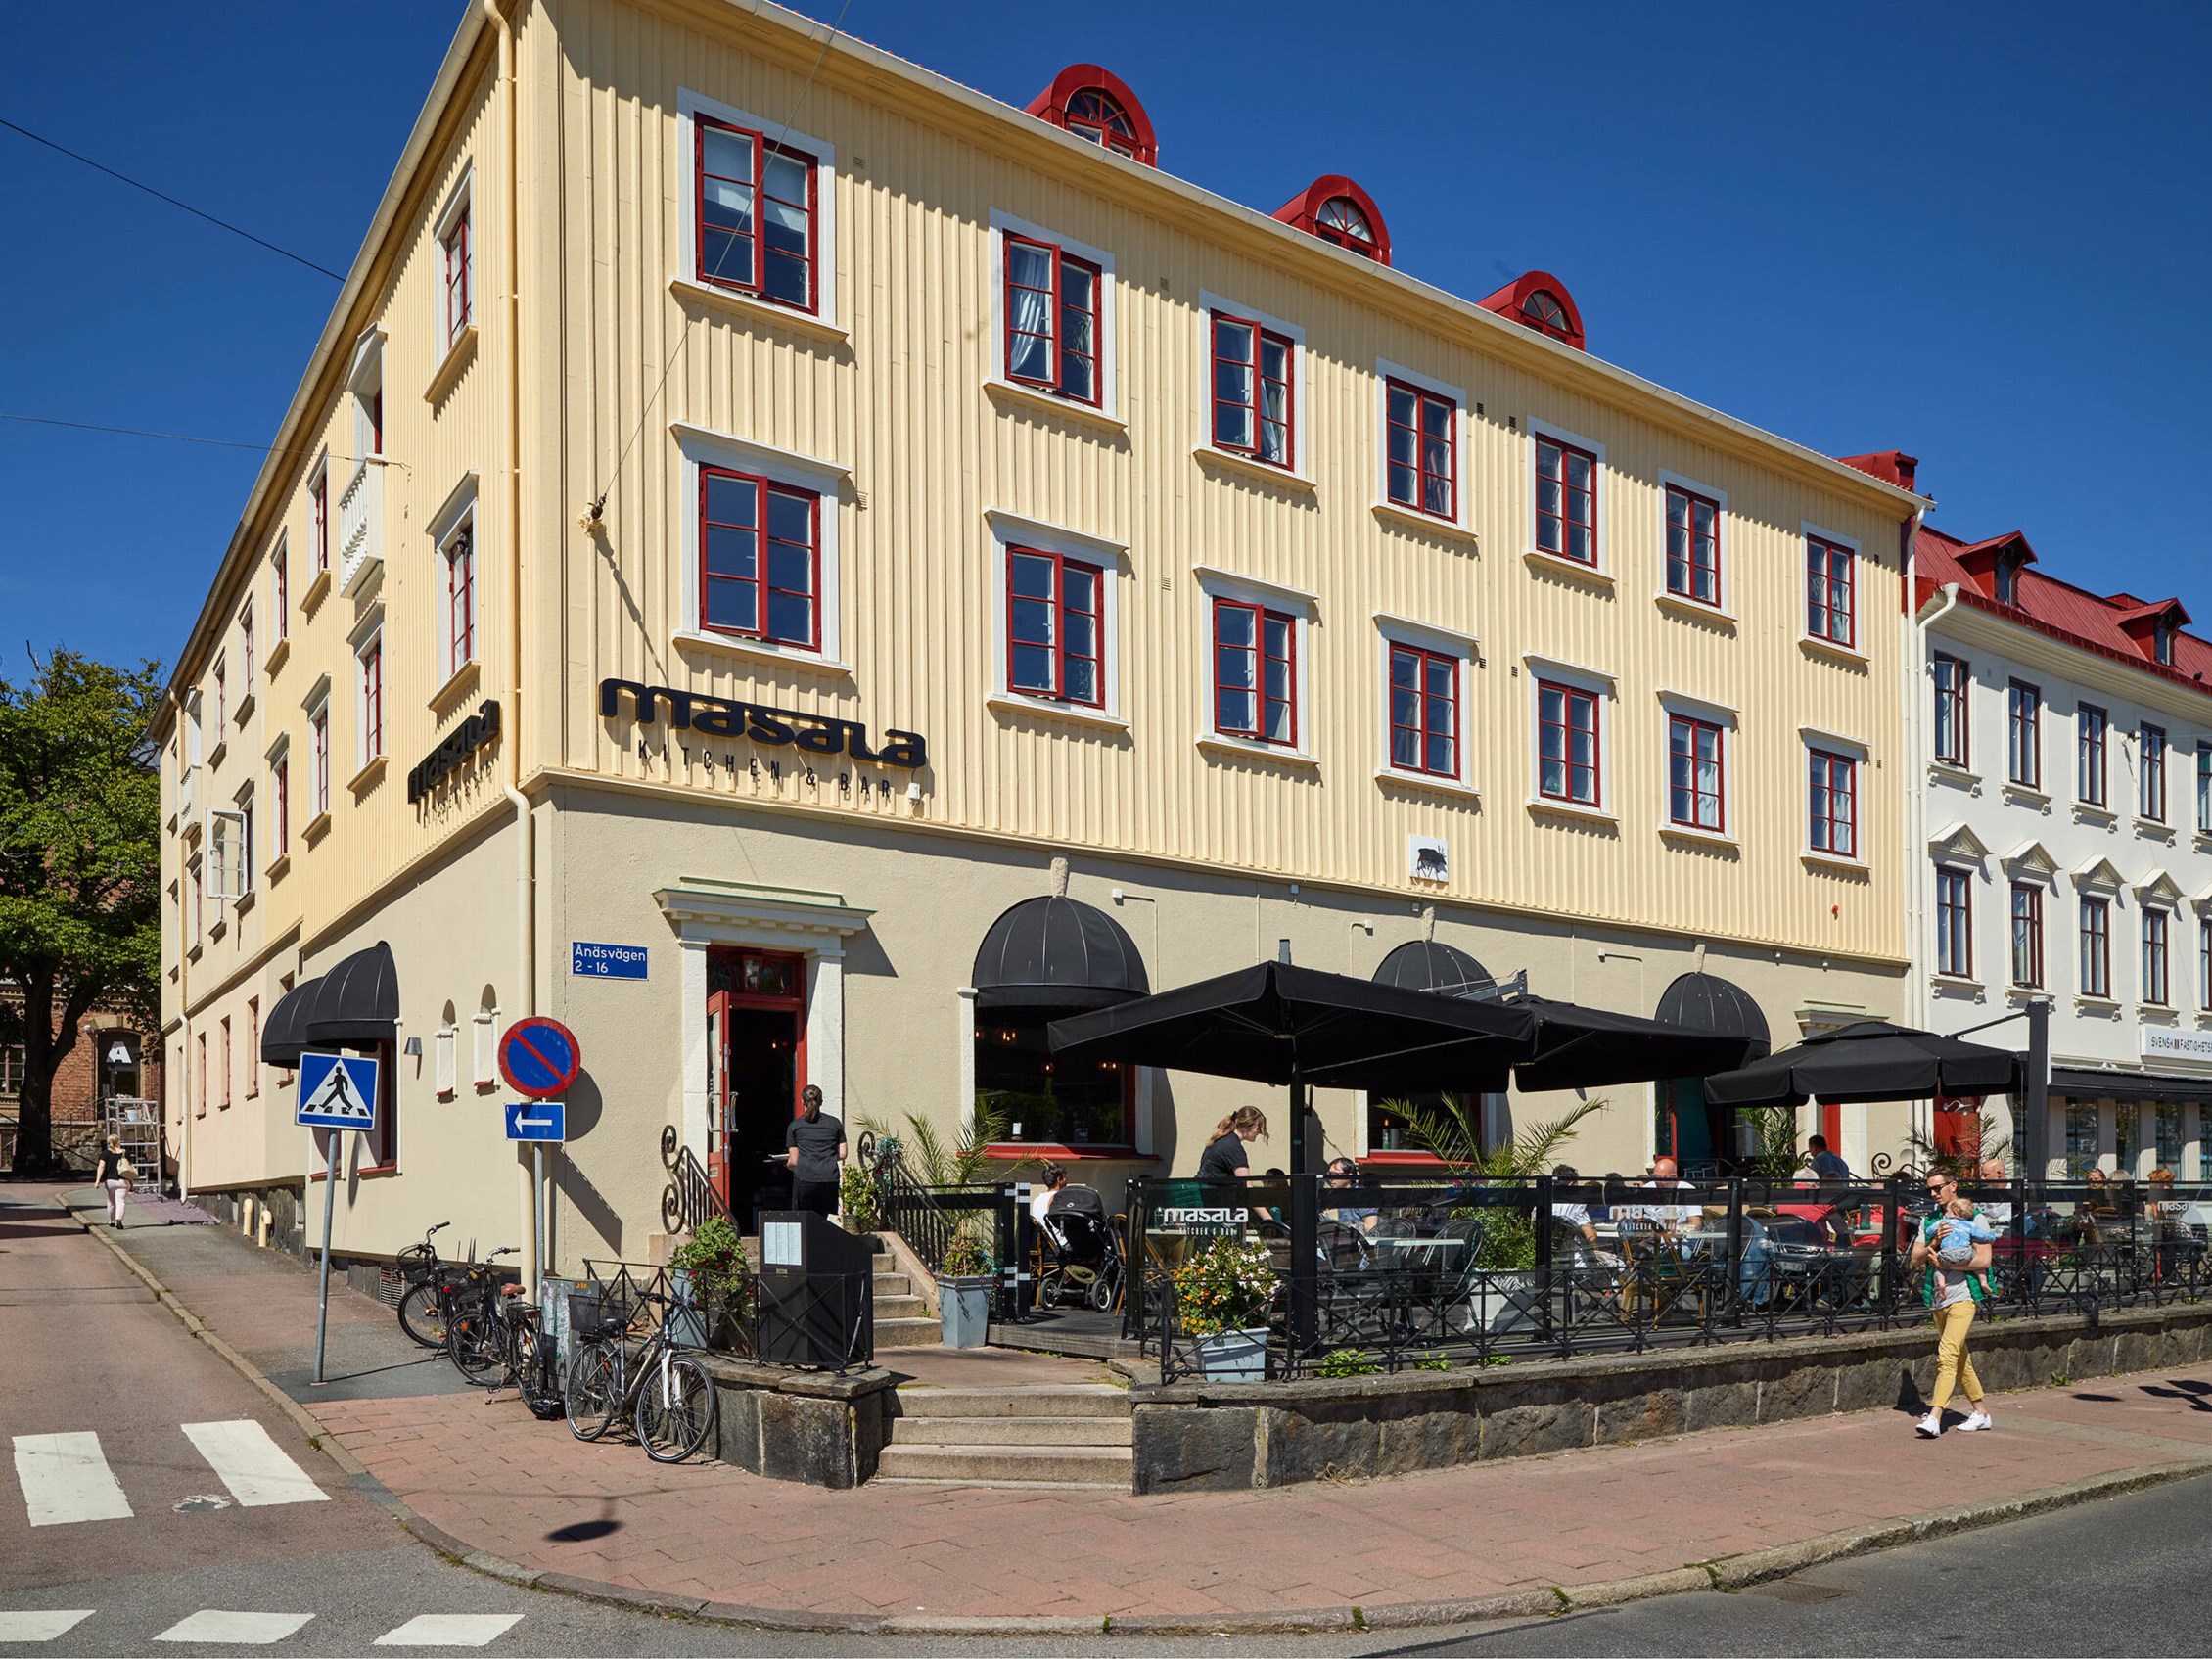 På bekvämt avstånd ligger Redbergsplatsen, med utmärkta kommunikationer och restauranger